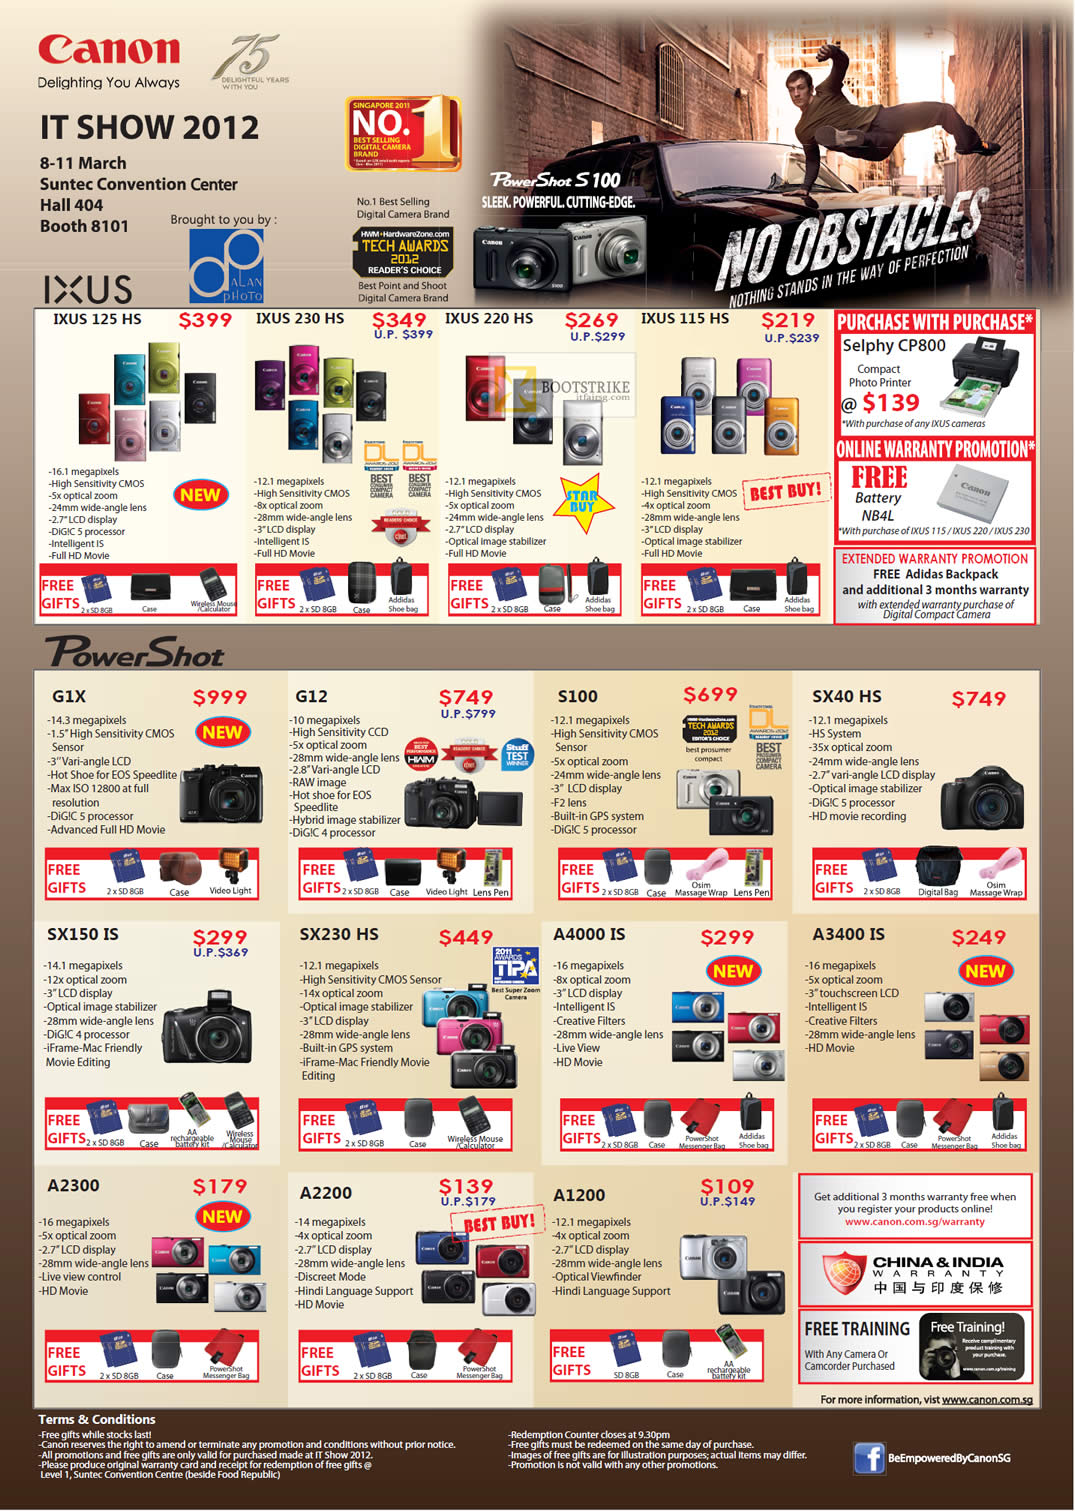 IT SHOW 2012 price list image brochure of Canon Digital Cameras Ixus 125 HS, 230 HS, 220 HS, 115 HS, PowerShot G1X, G12, S100, SX40 HS, SX150 IS, SX230 HS, A4000 IS, A3400 IS, A2300, A2200, A1200